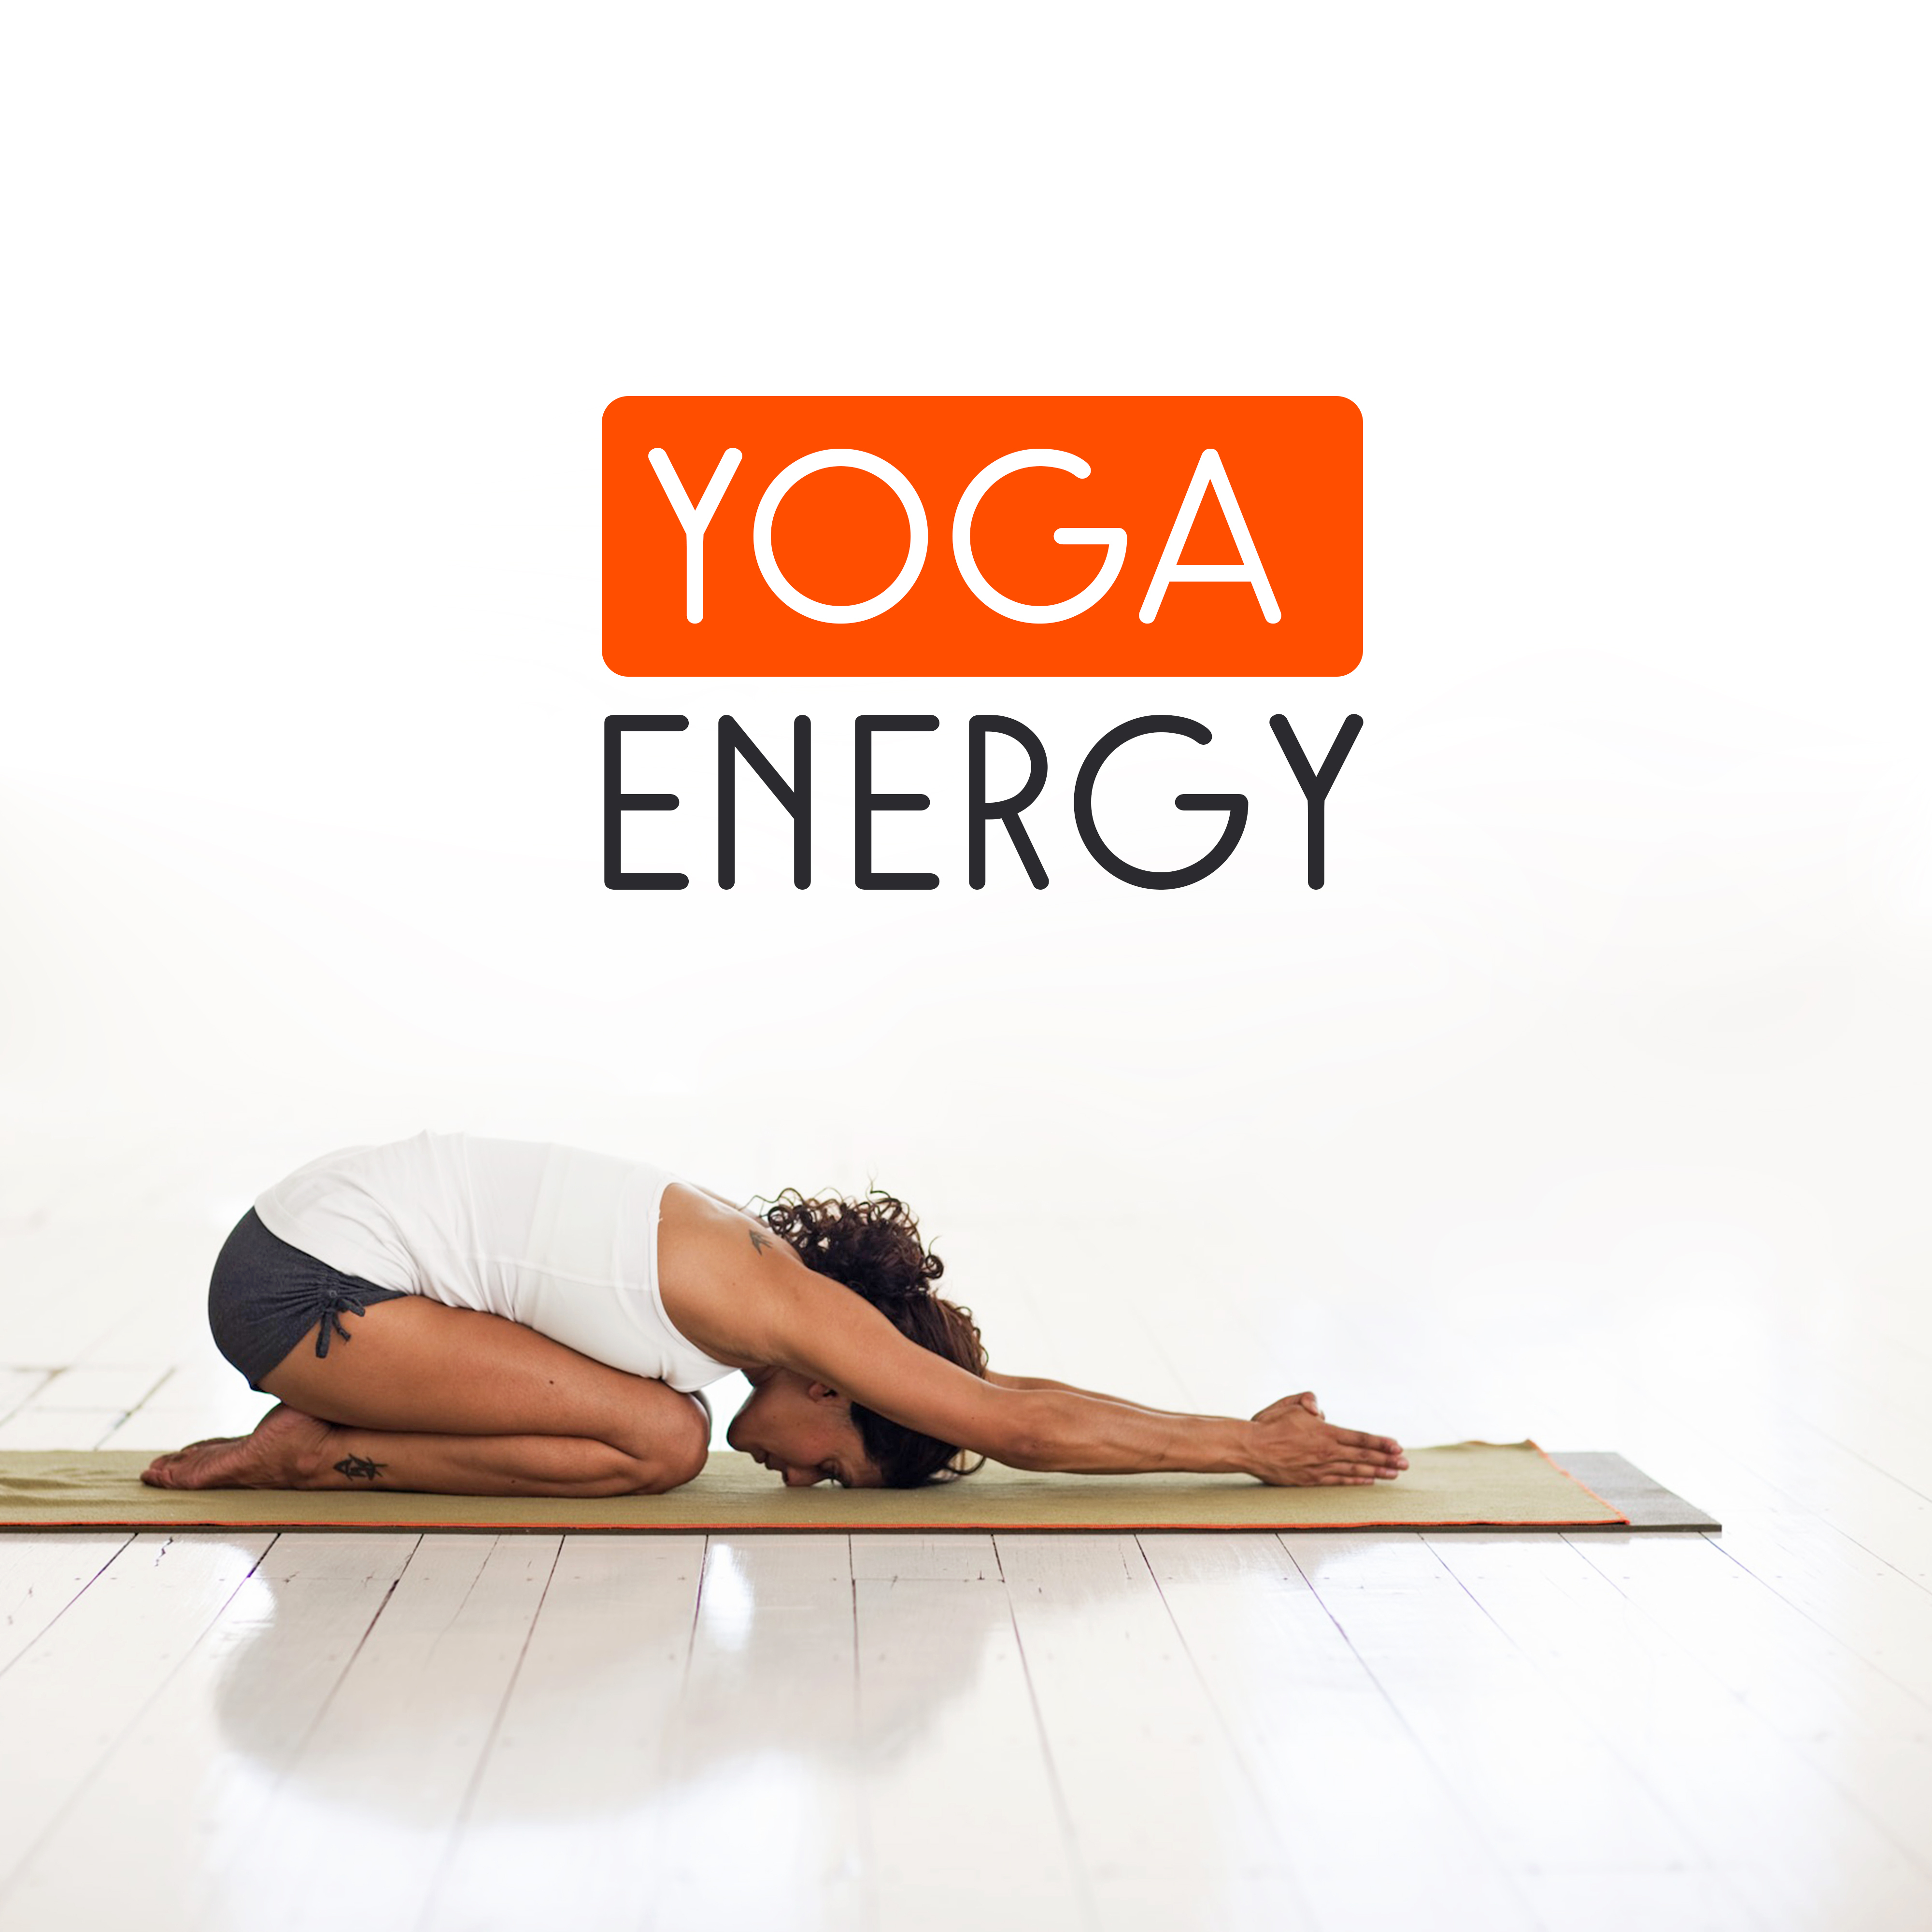 Yoga Energy